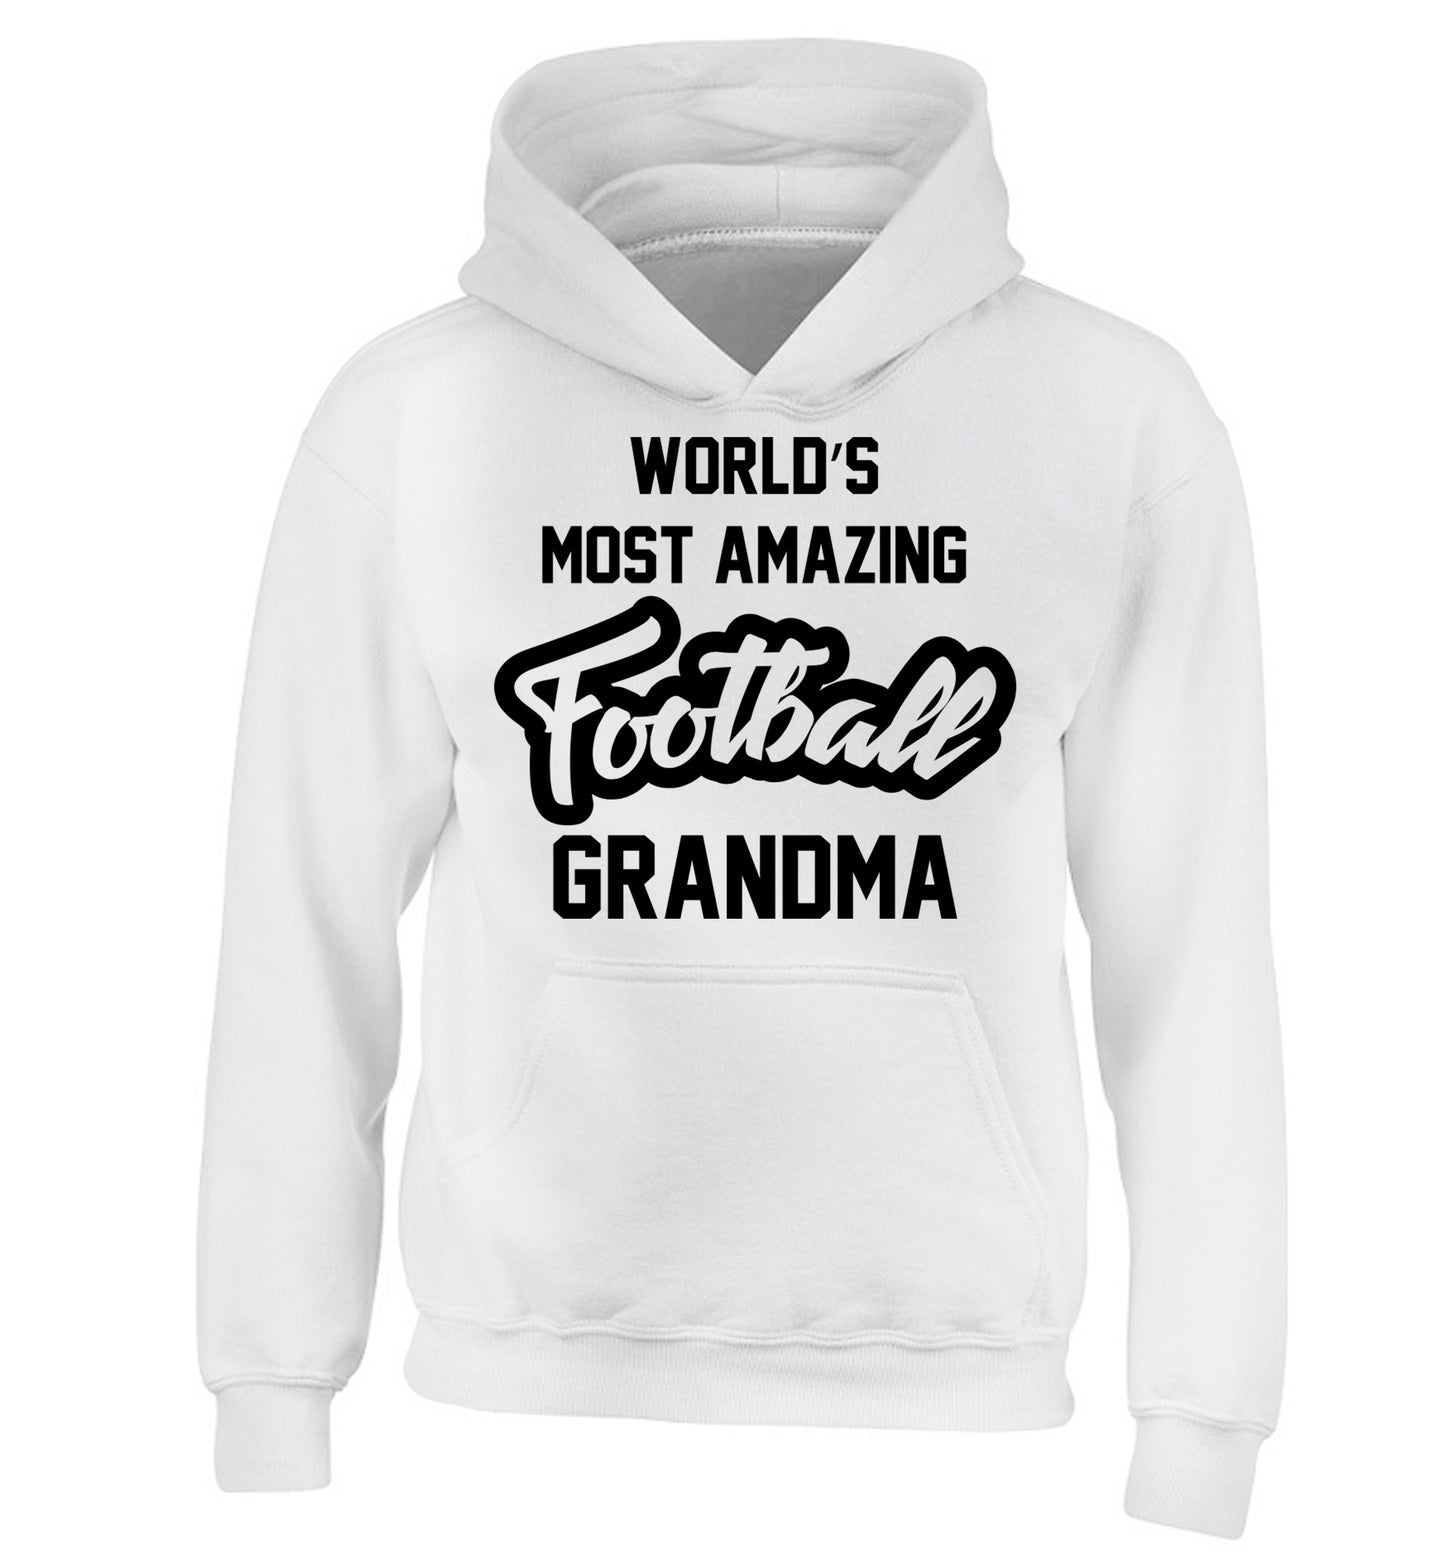 Worlds most amazing football grandma children's white hoodie 12-14 Years